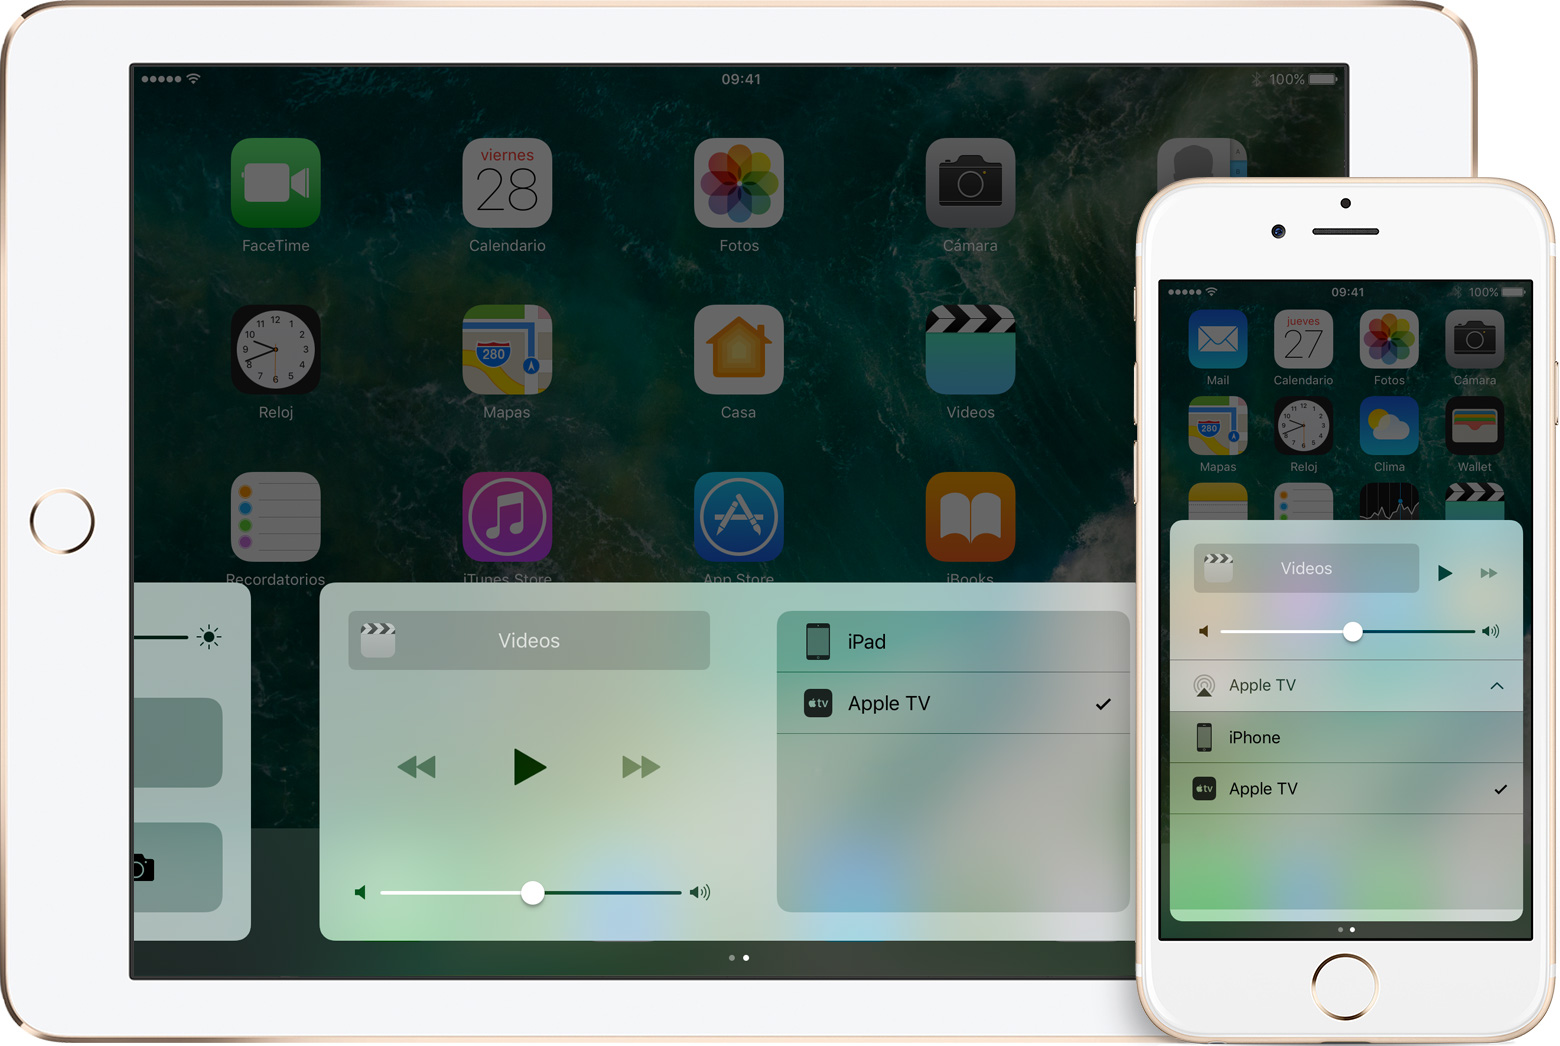 Cómo trasmitir contenido con AirPlay desde un iPhone o iPad? – Selecta